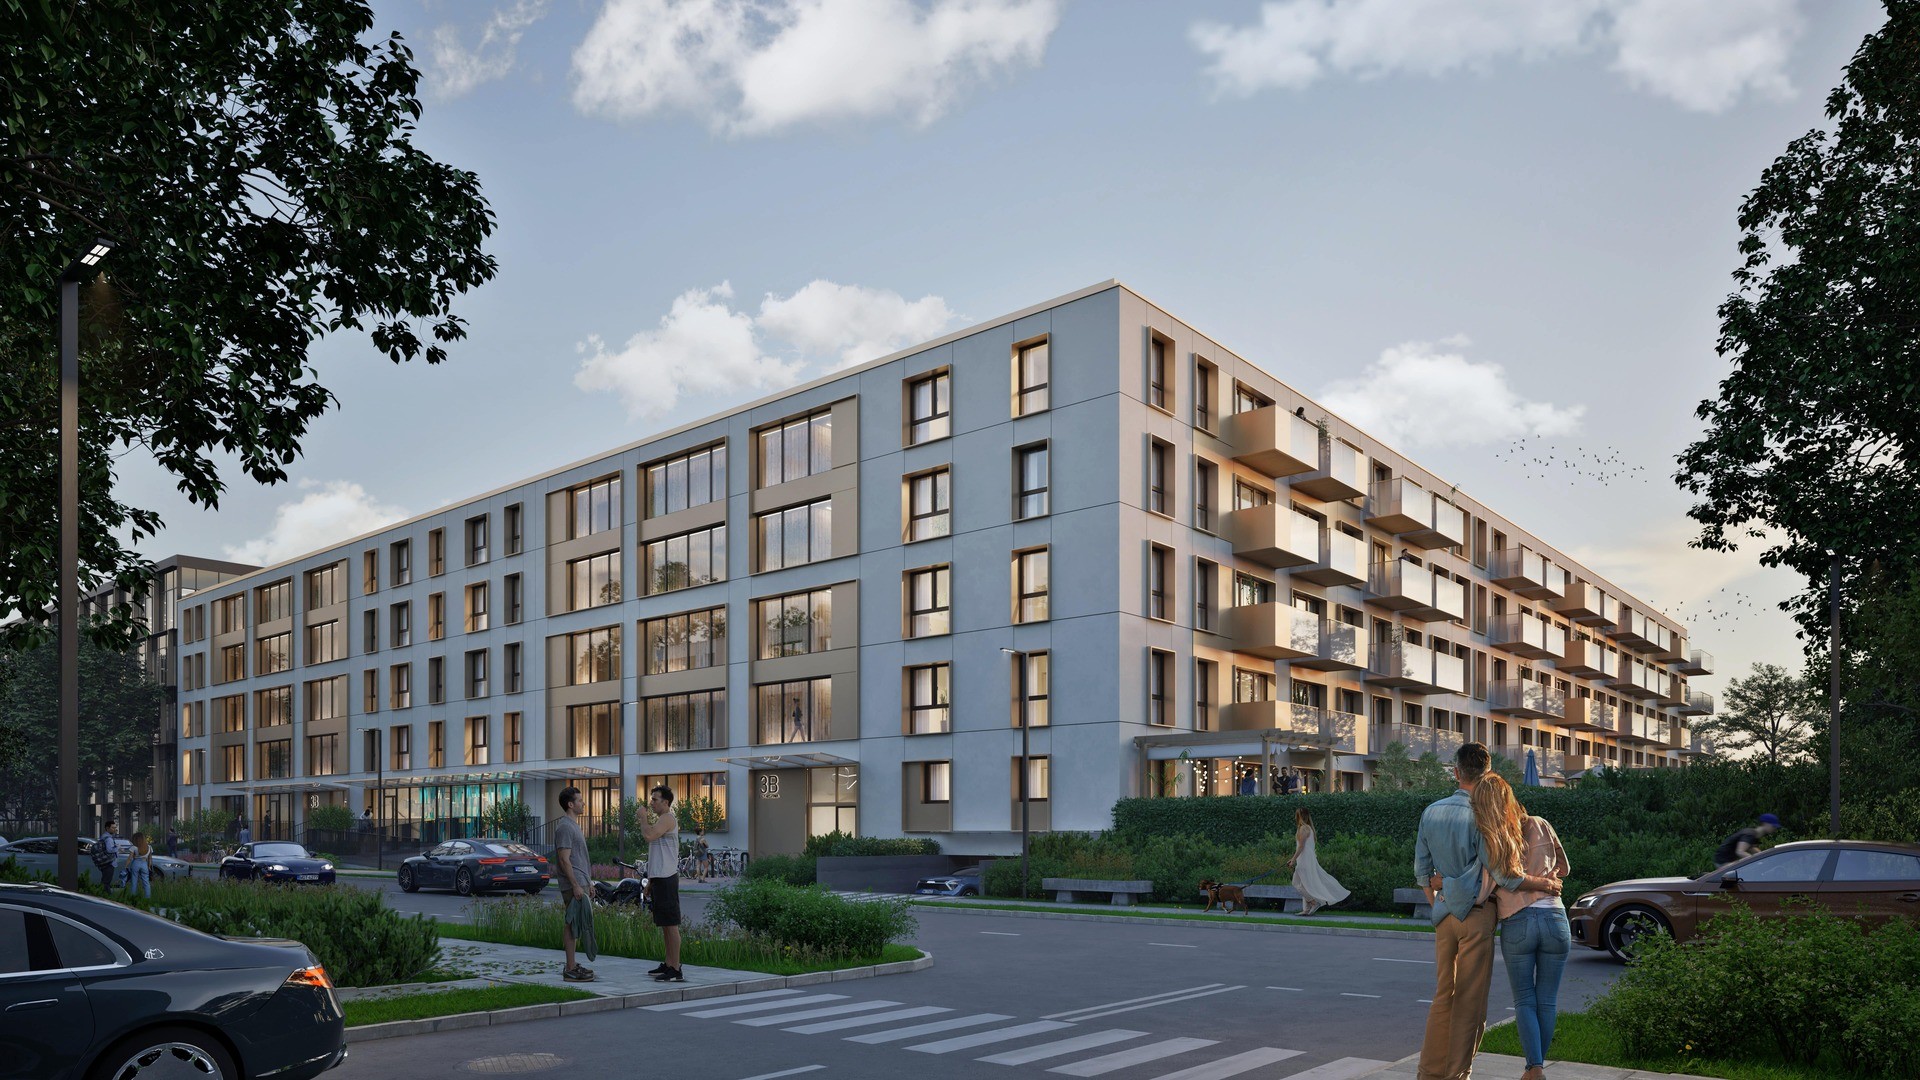 Startujemy z przedsprzedażą kolejnej inwestycji mieszkaniowej w Katowicach! Z dumą prezentujemy Wam Belg Apartamenty